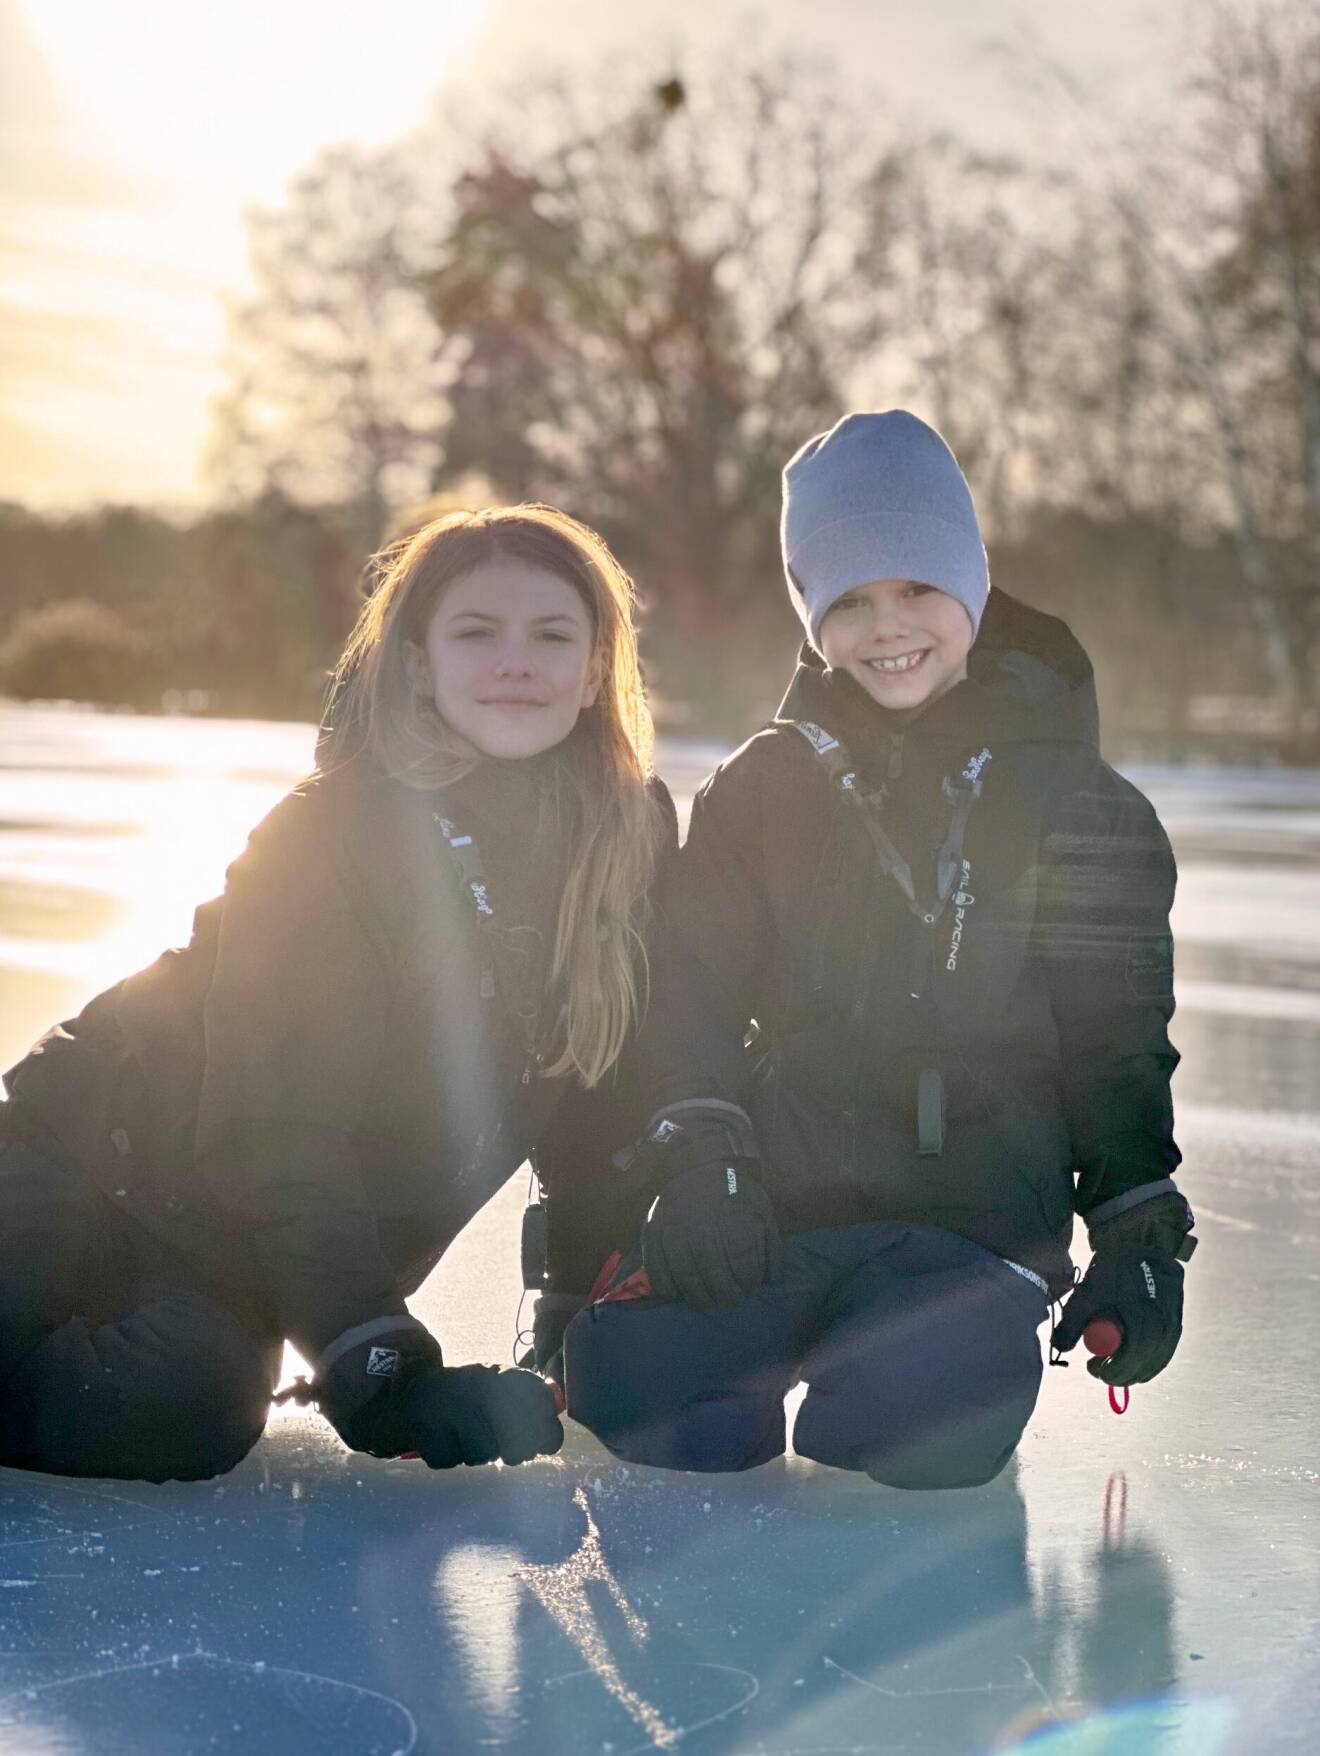 Prinsessan Estelle och prins Oscar utomhus på isen